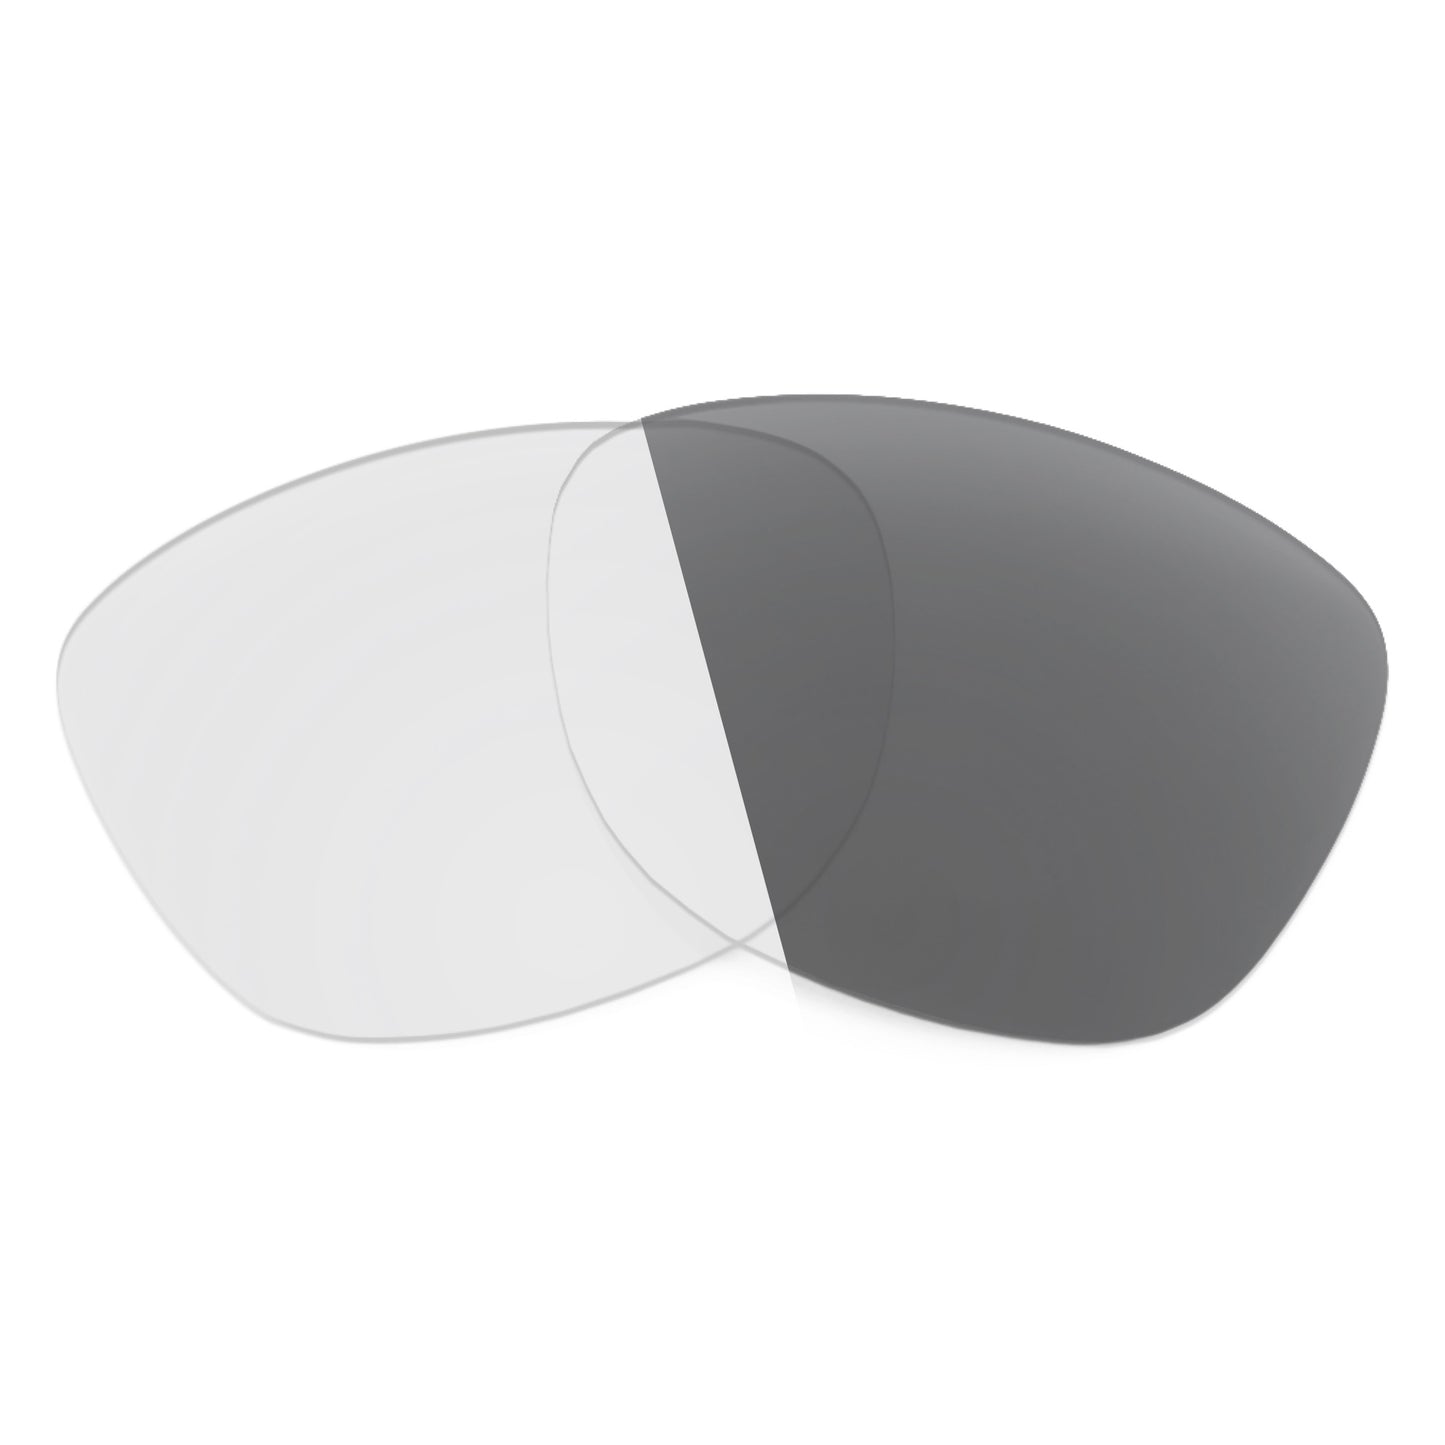 Revant replacement lenses for Maui Jim Honi MJ758 Non-Polarized Adapt Gray Photochromic